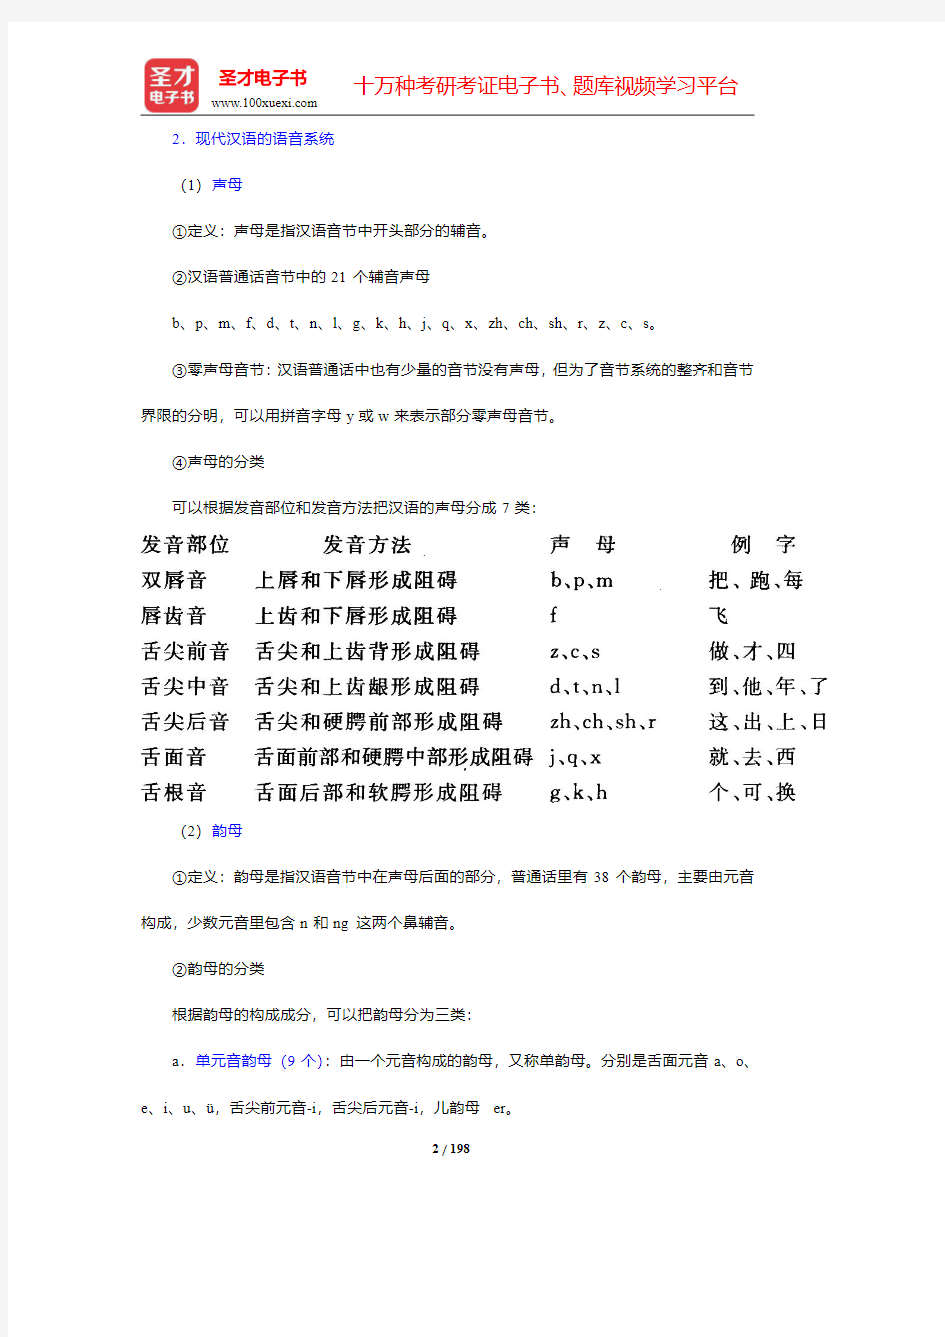 对外汉语教师资格考试(高级)《对外汉语教学理论与语言学》笔记和典型题(含历年真题)详解(7-9章)【